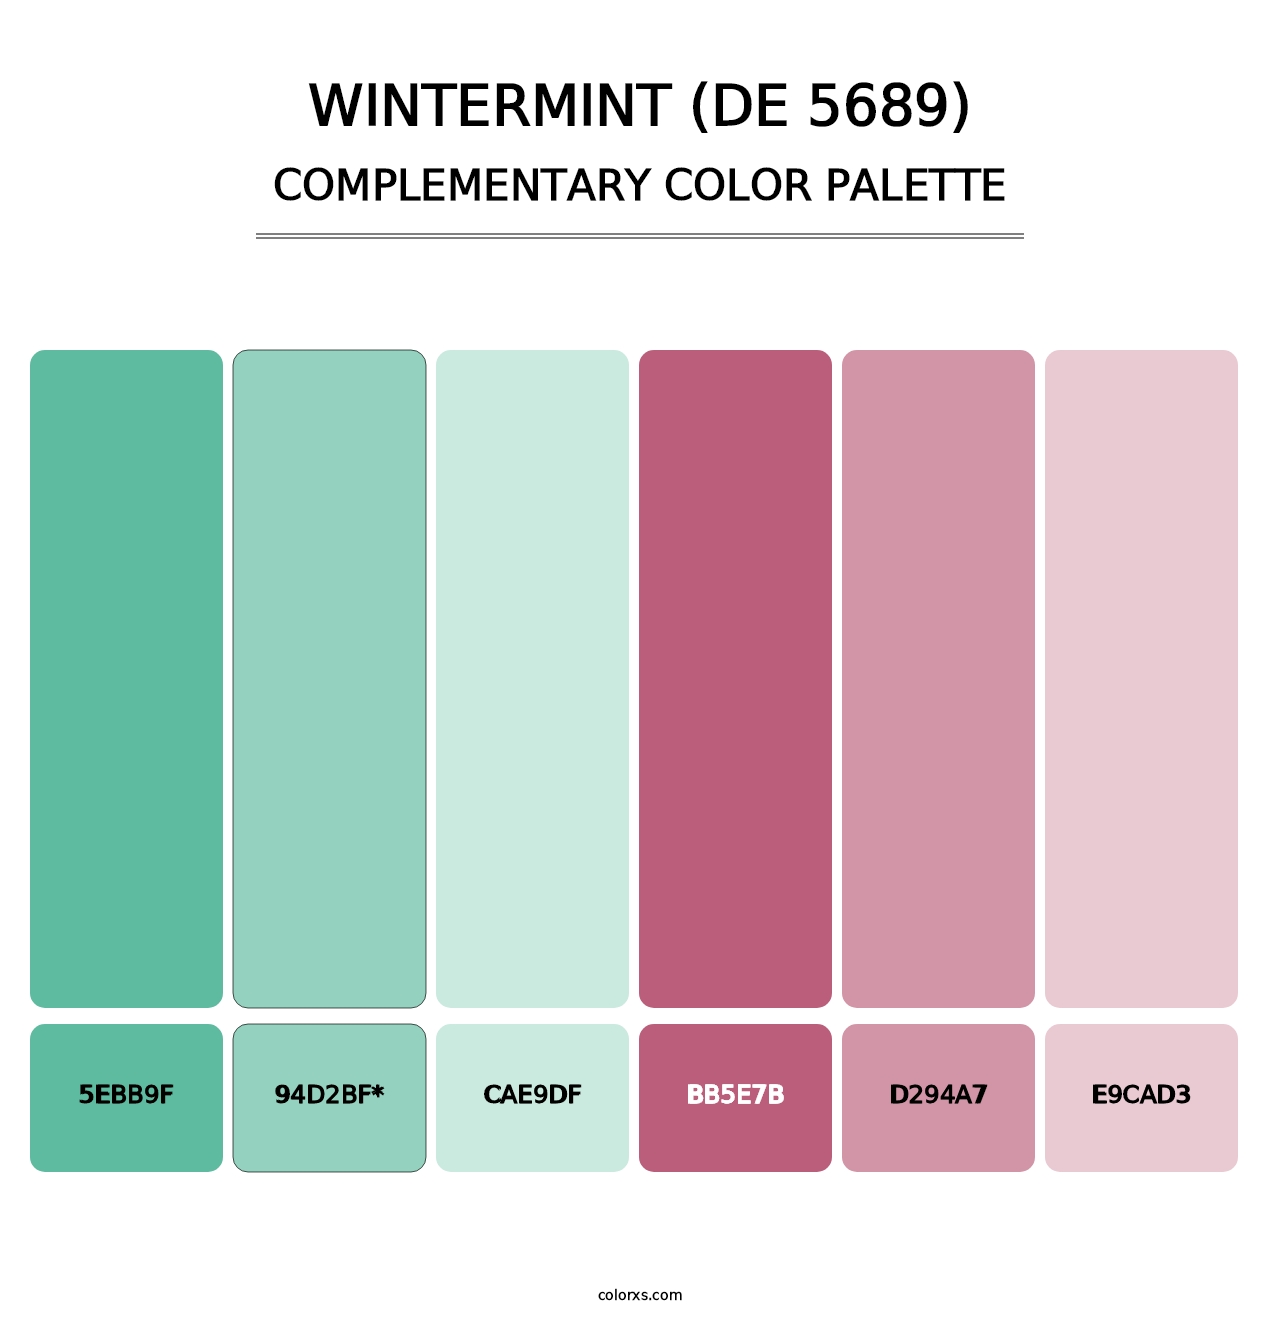 Wintermint (DE 5689) - Complementary Color Palette